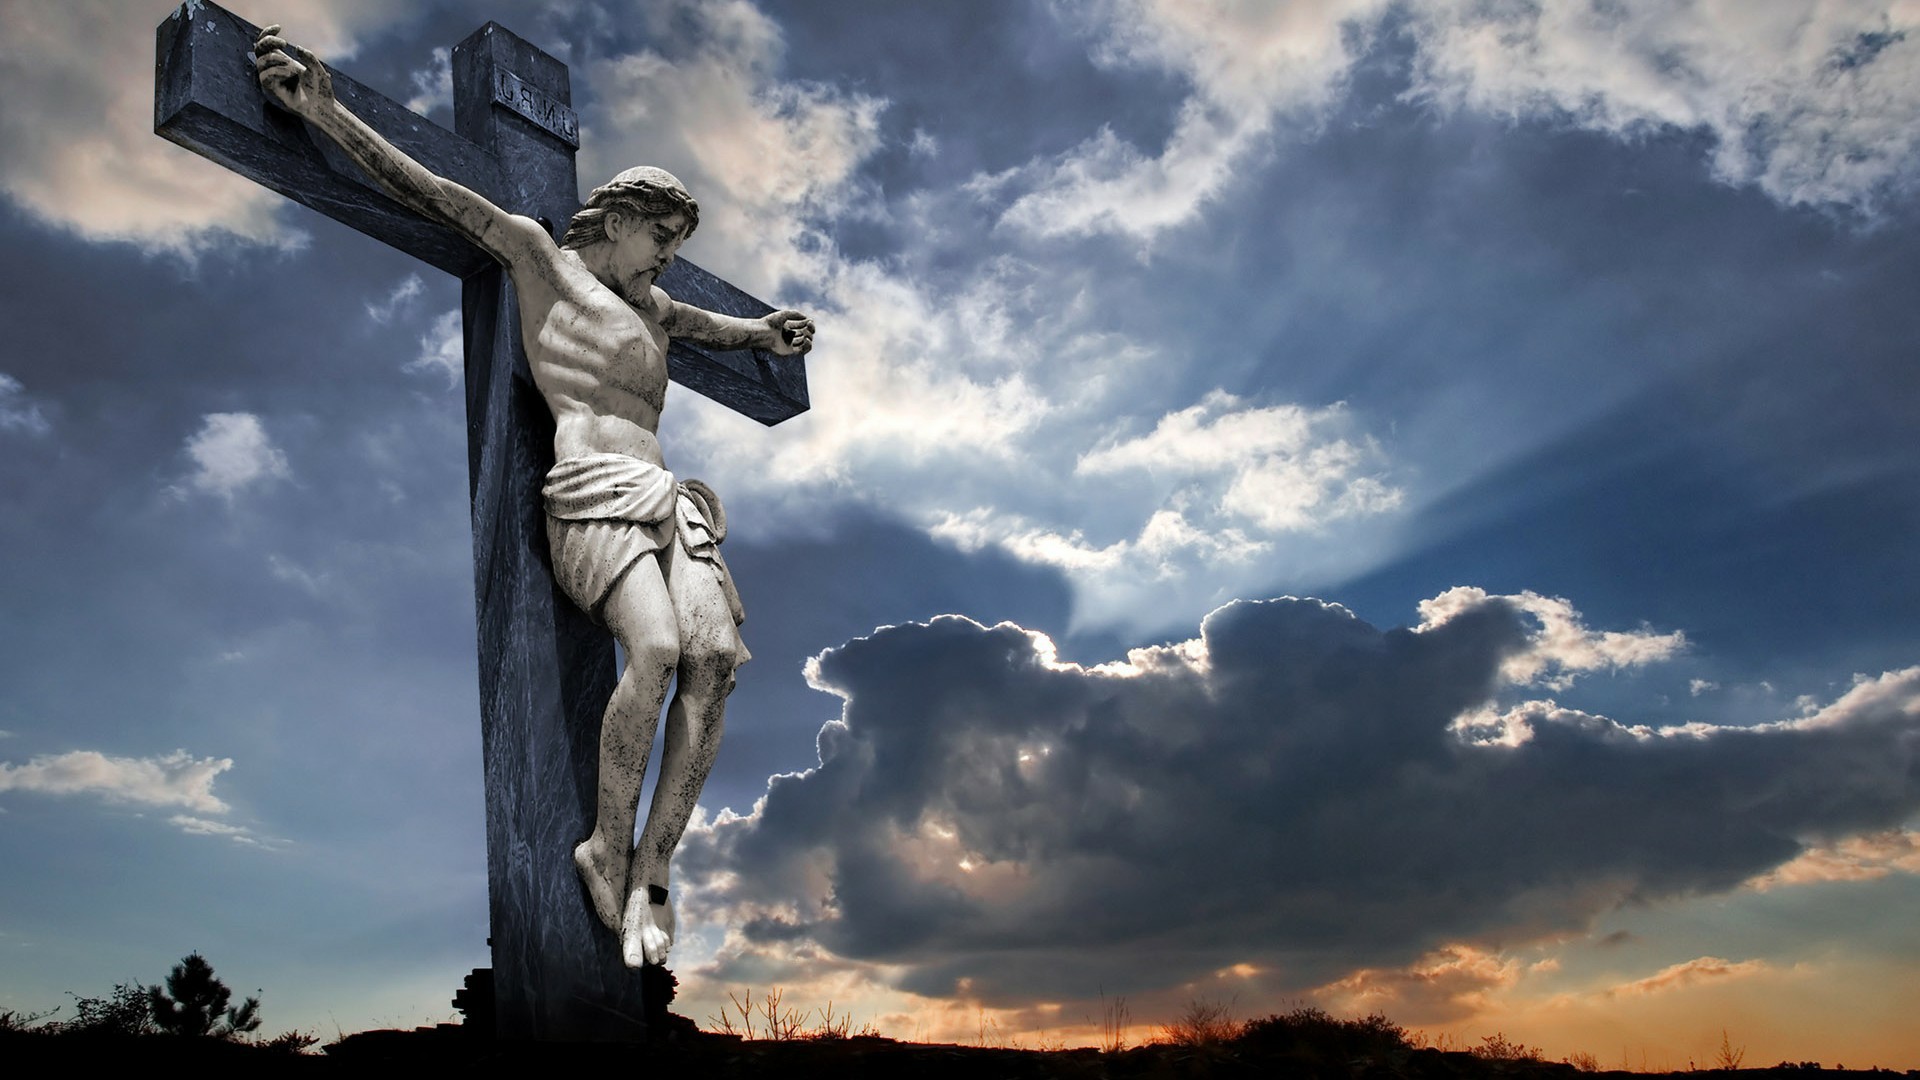 Jesus On The Cross Hd , HD Wallpaper & Backgrounds